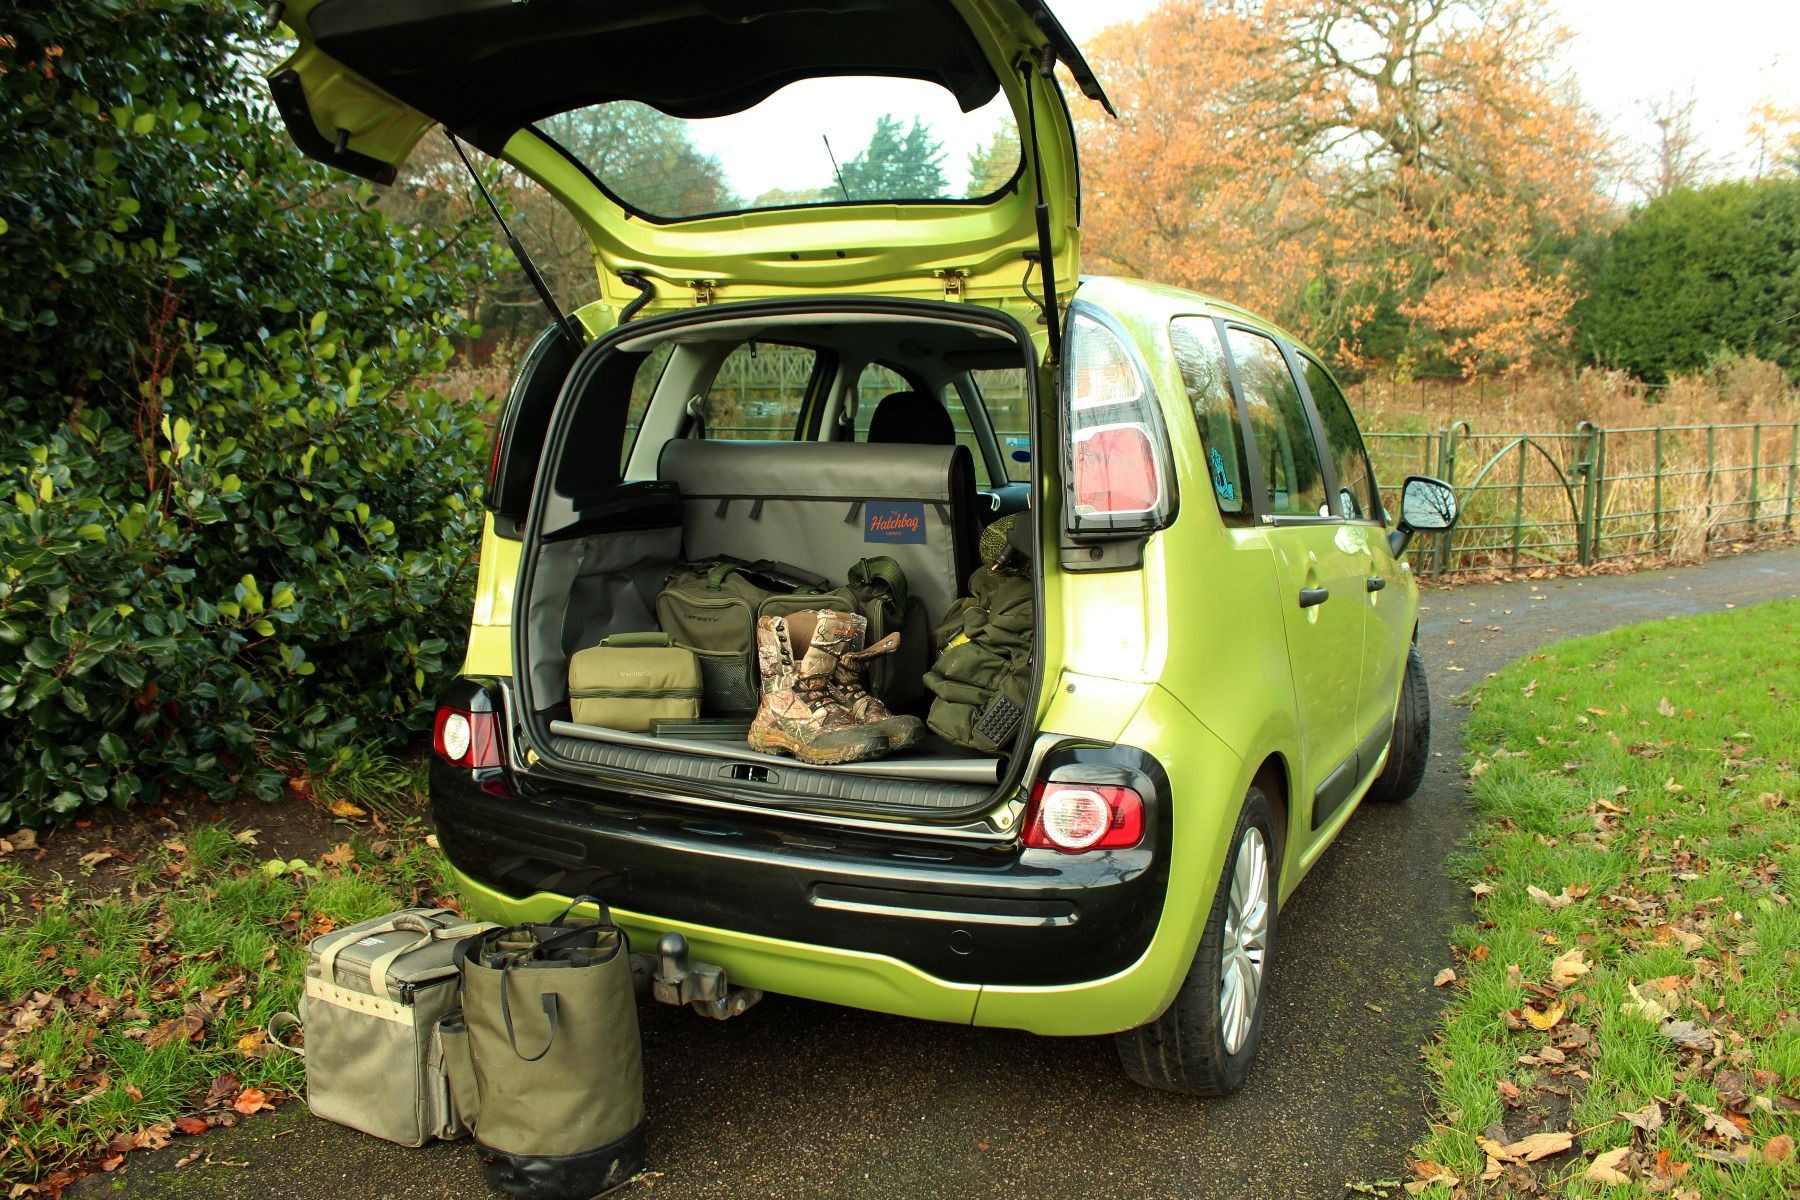 BERULL Kofferraumschutz für Hund,für Dacia Sandero Stepway